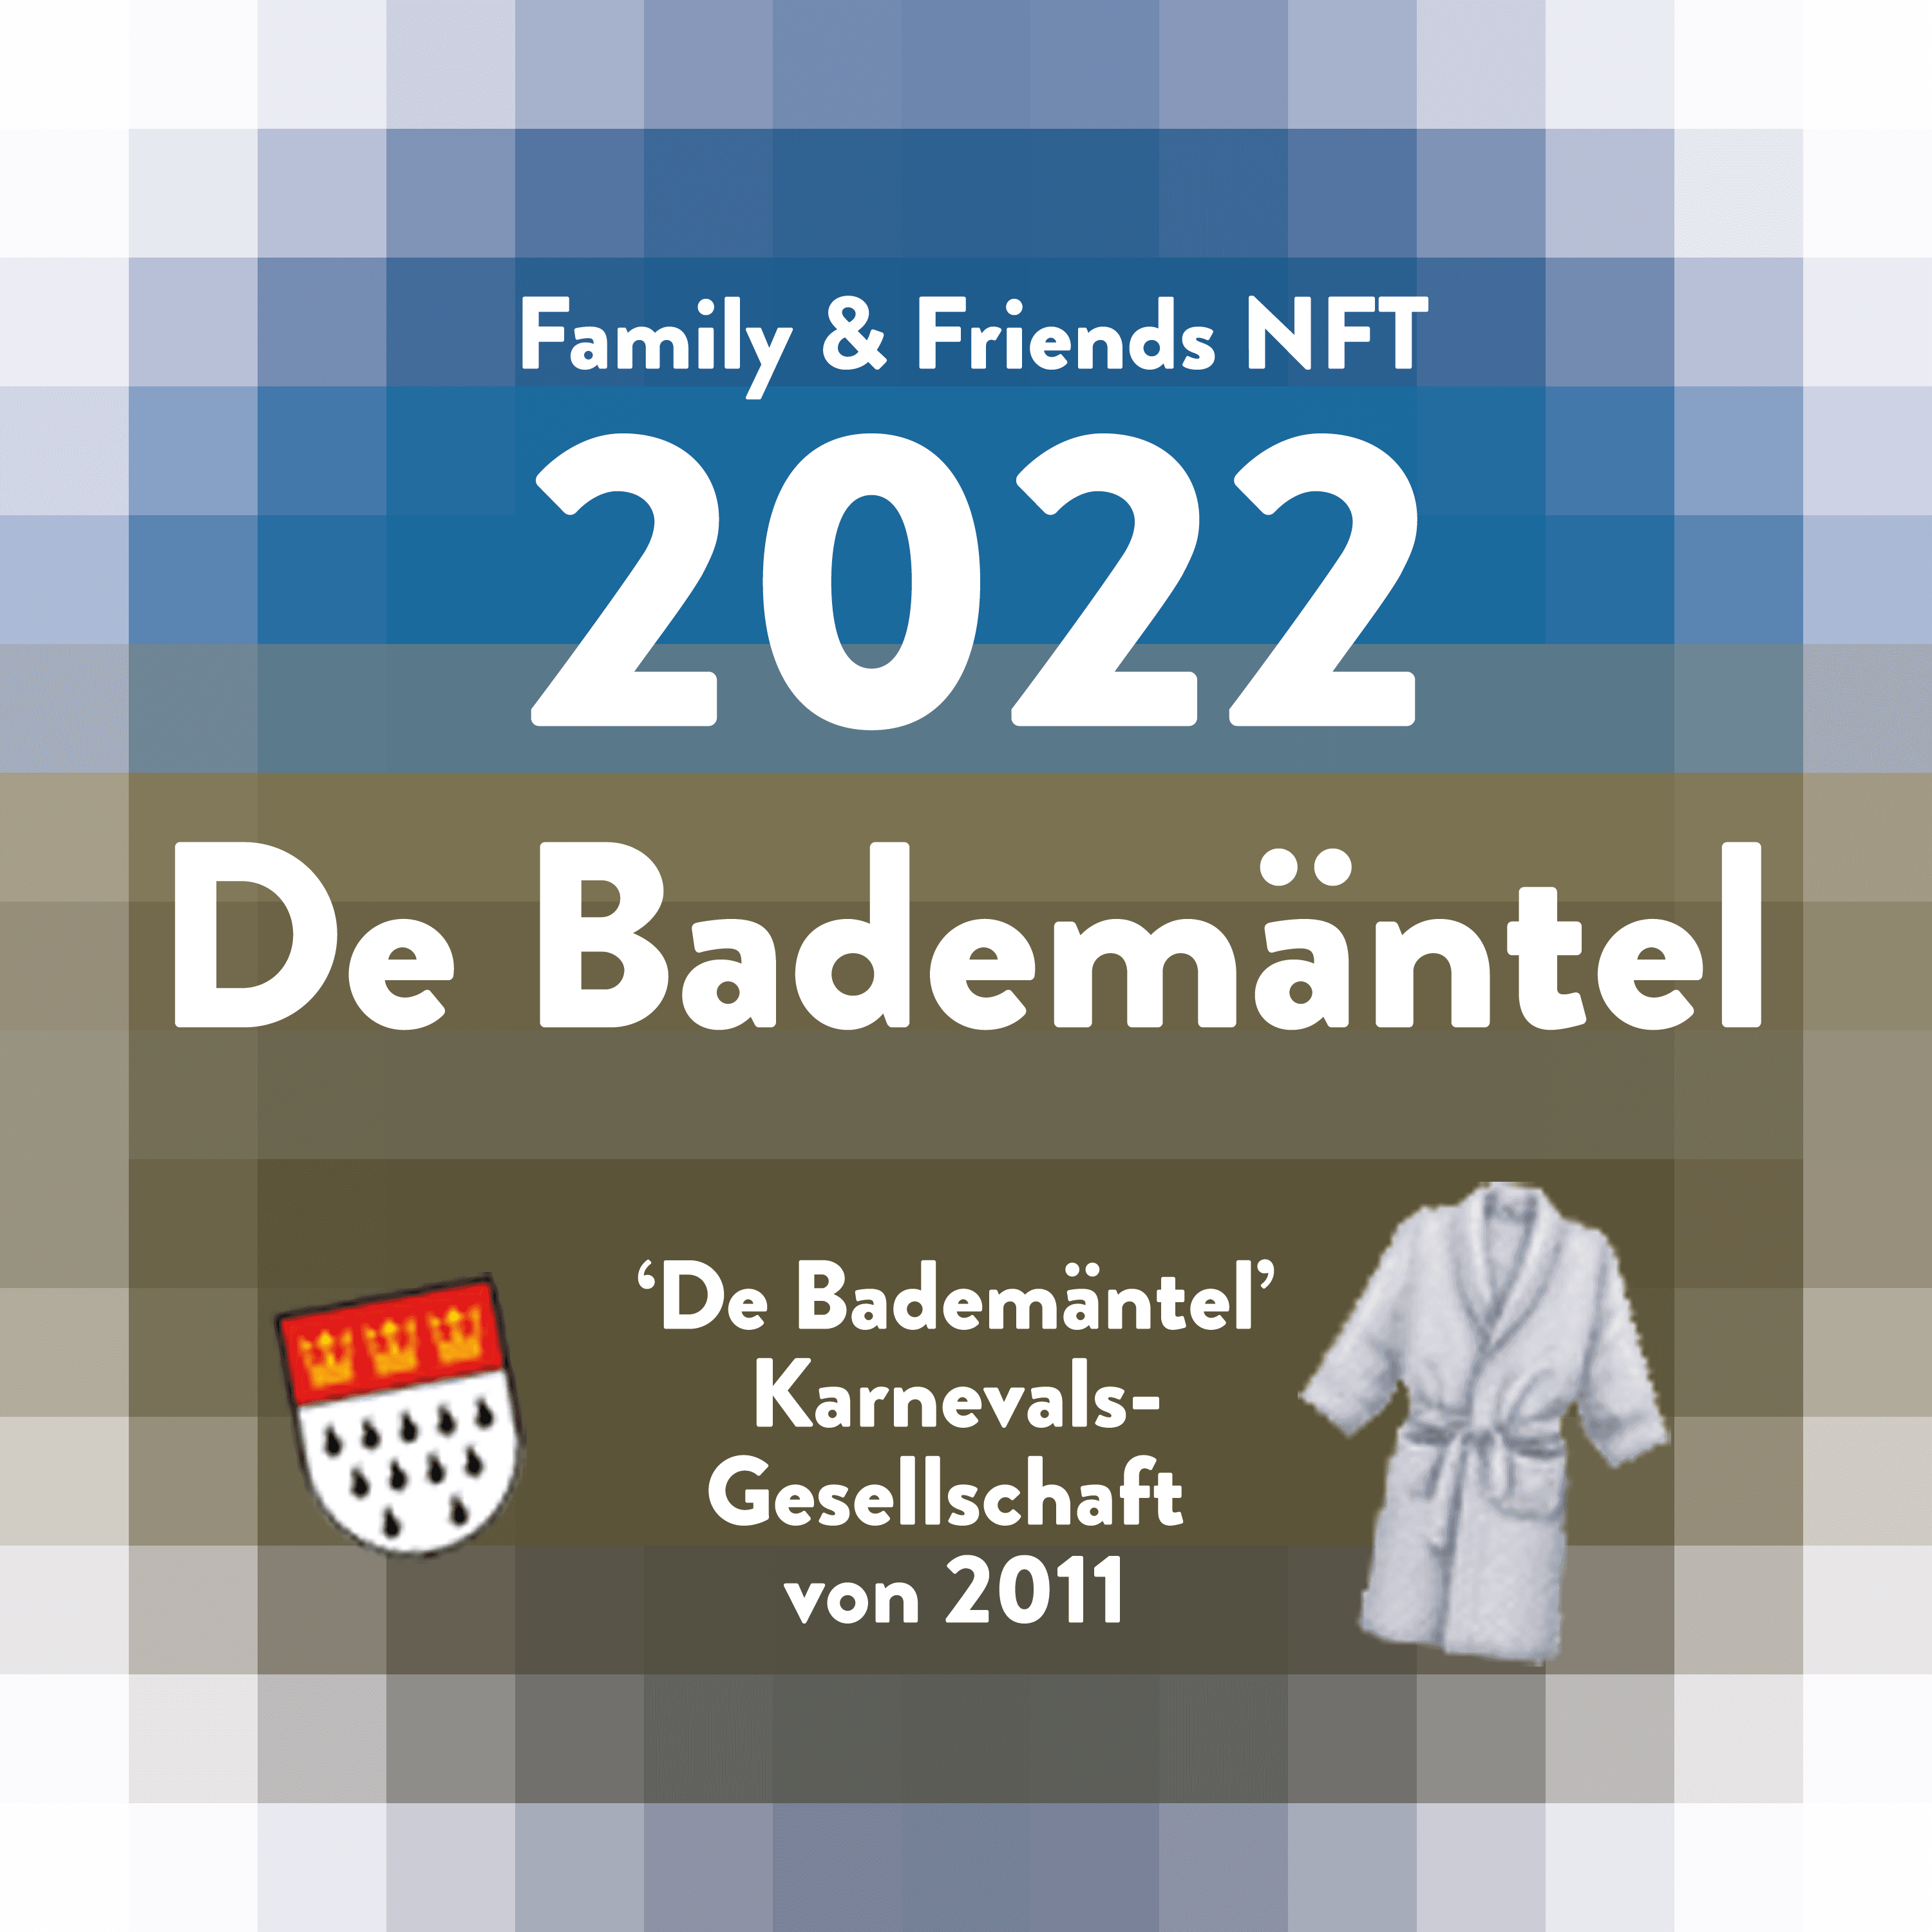 De Bademäntel Family & Friends NFT 2022